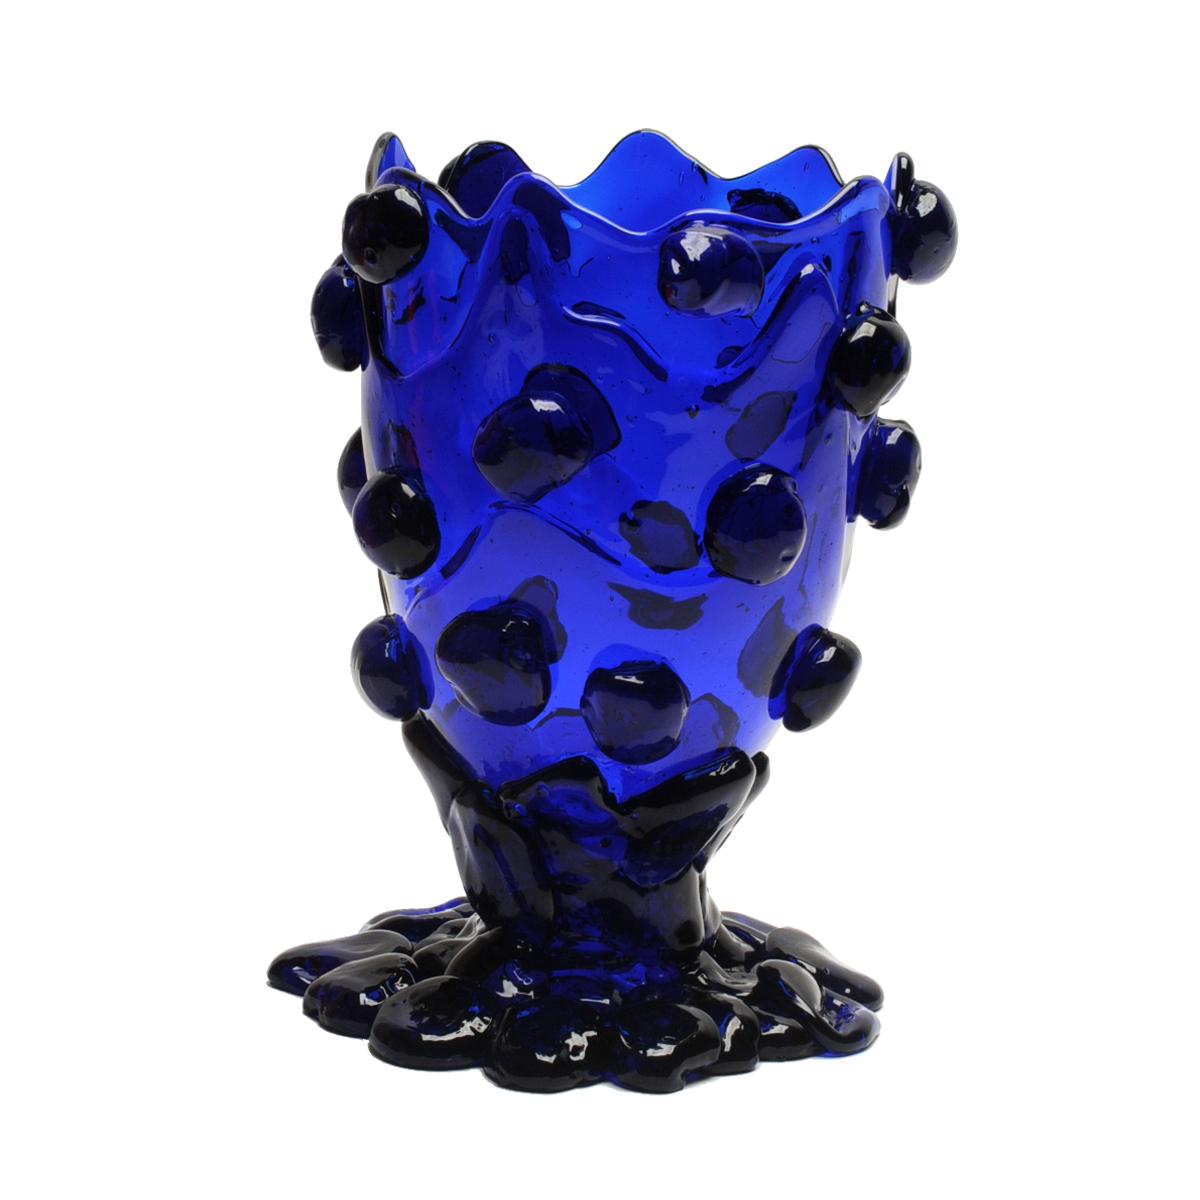 Vase en forme de pépite, bleu clair.
Vase en résine souple conçu par Gaetano Pesce en 1995 pour la collection Fish Design.

Mesures : L - ø 22cm x H 36cm
Couleurs : bleu clair.
Autres tailles disponibles.
Vase en résine souple conçu par